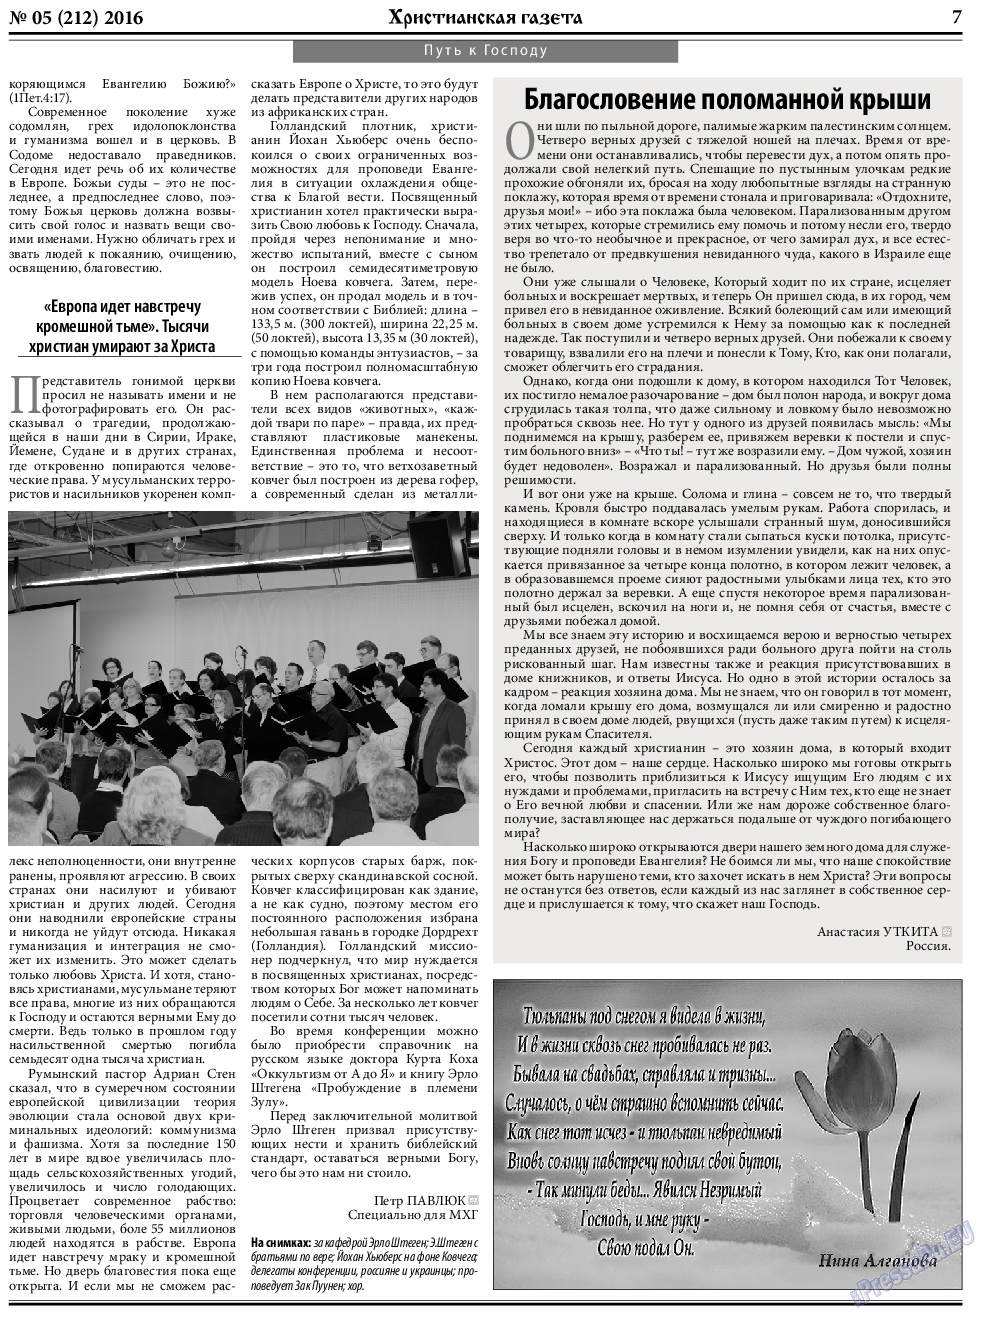 Христианская газета, газета. 2016 №5 стр.7